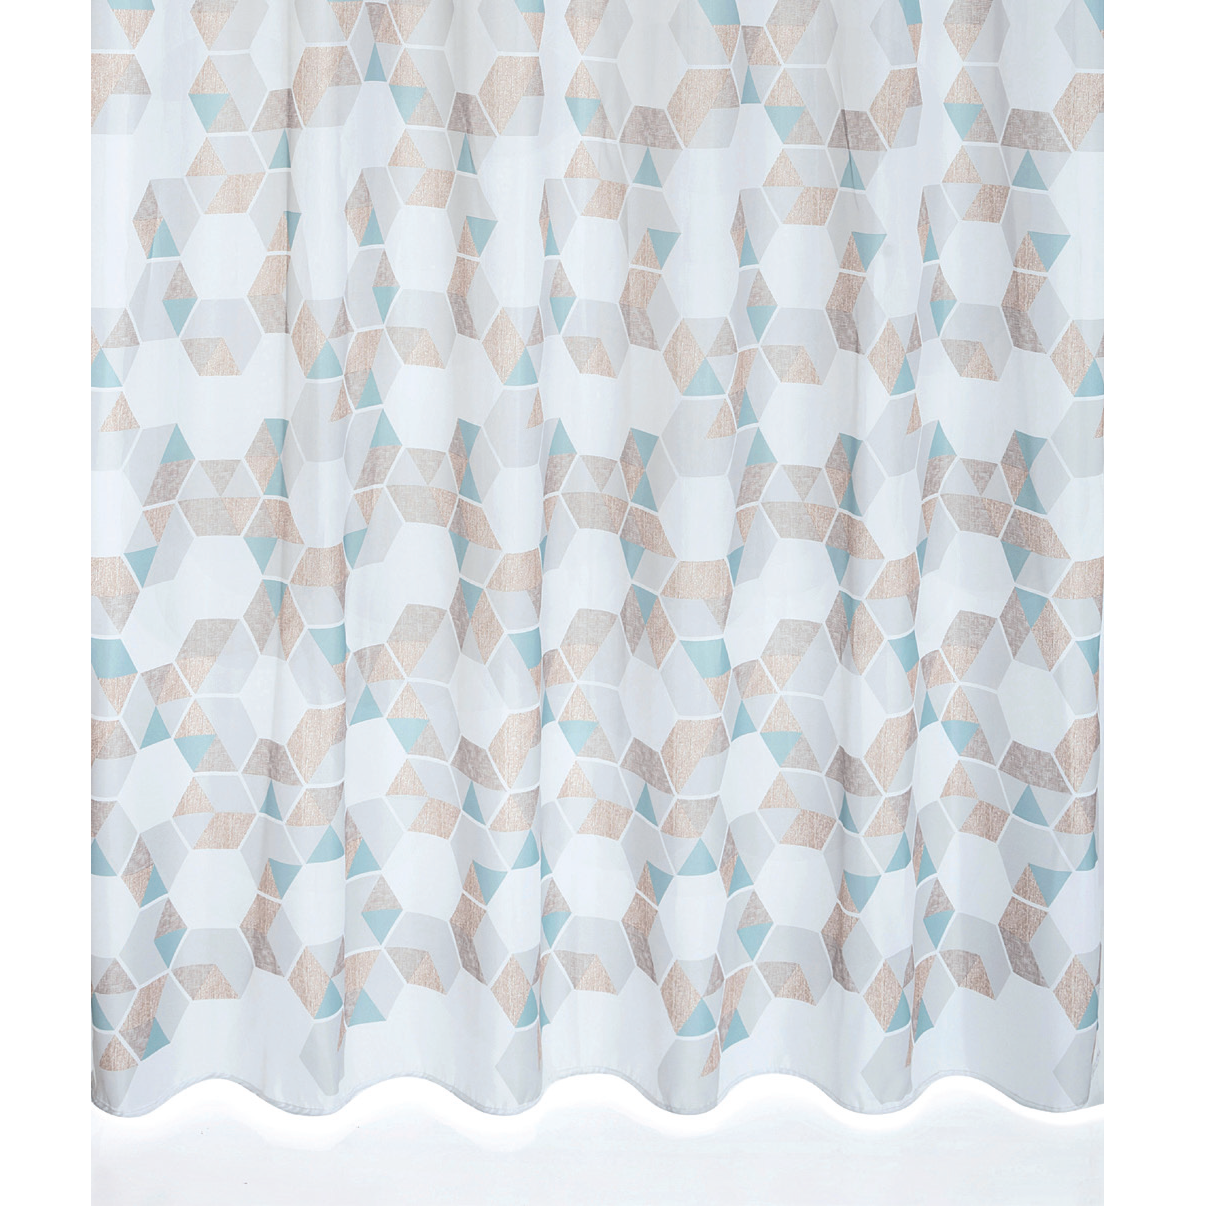 Hexagonal shower curtain